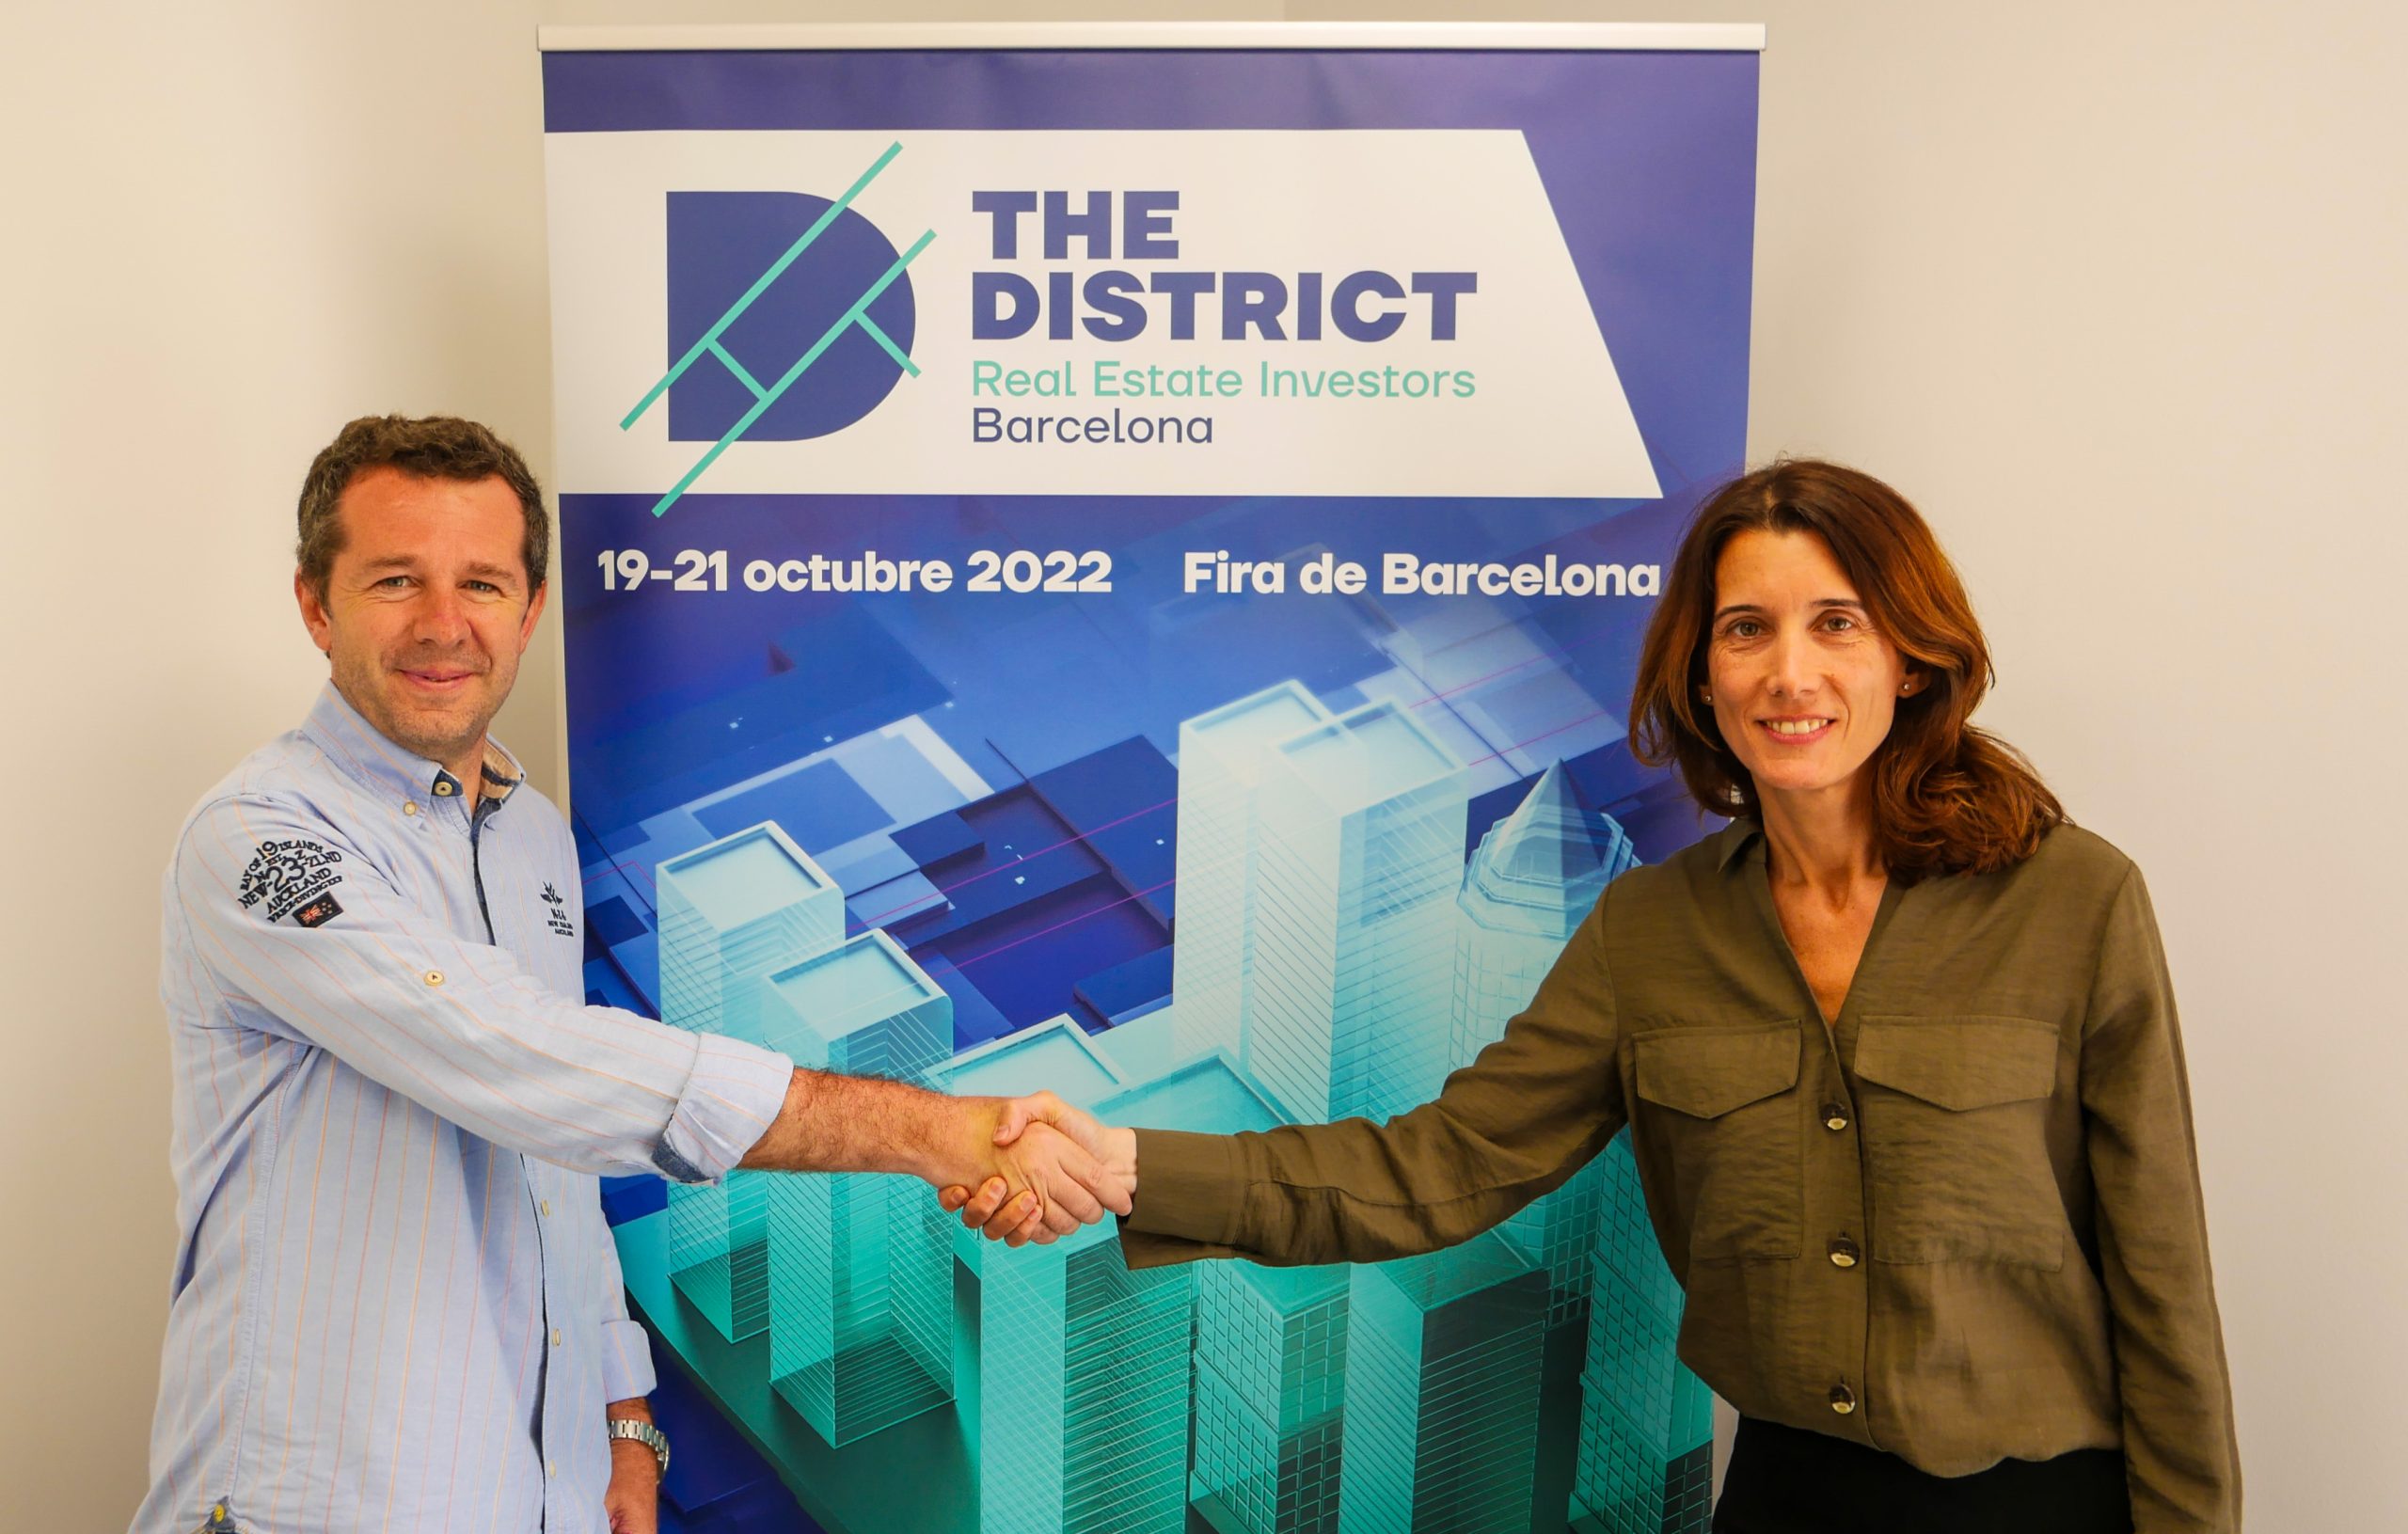 The District, el evento internacional diseñado para todos los actores de la industria del capital inmobiliario, llega a Barcelona el próximo otoño